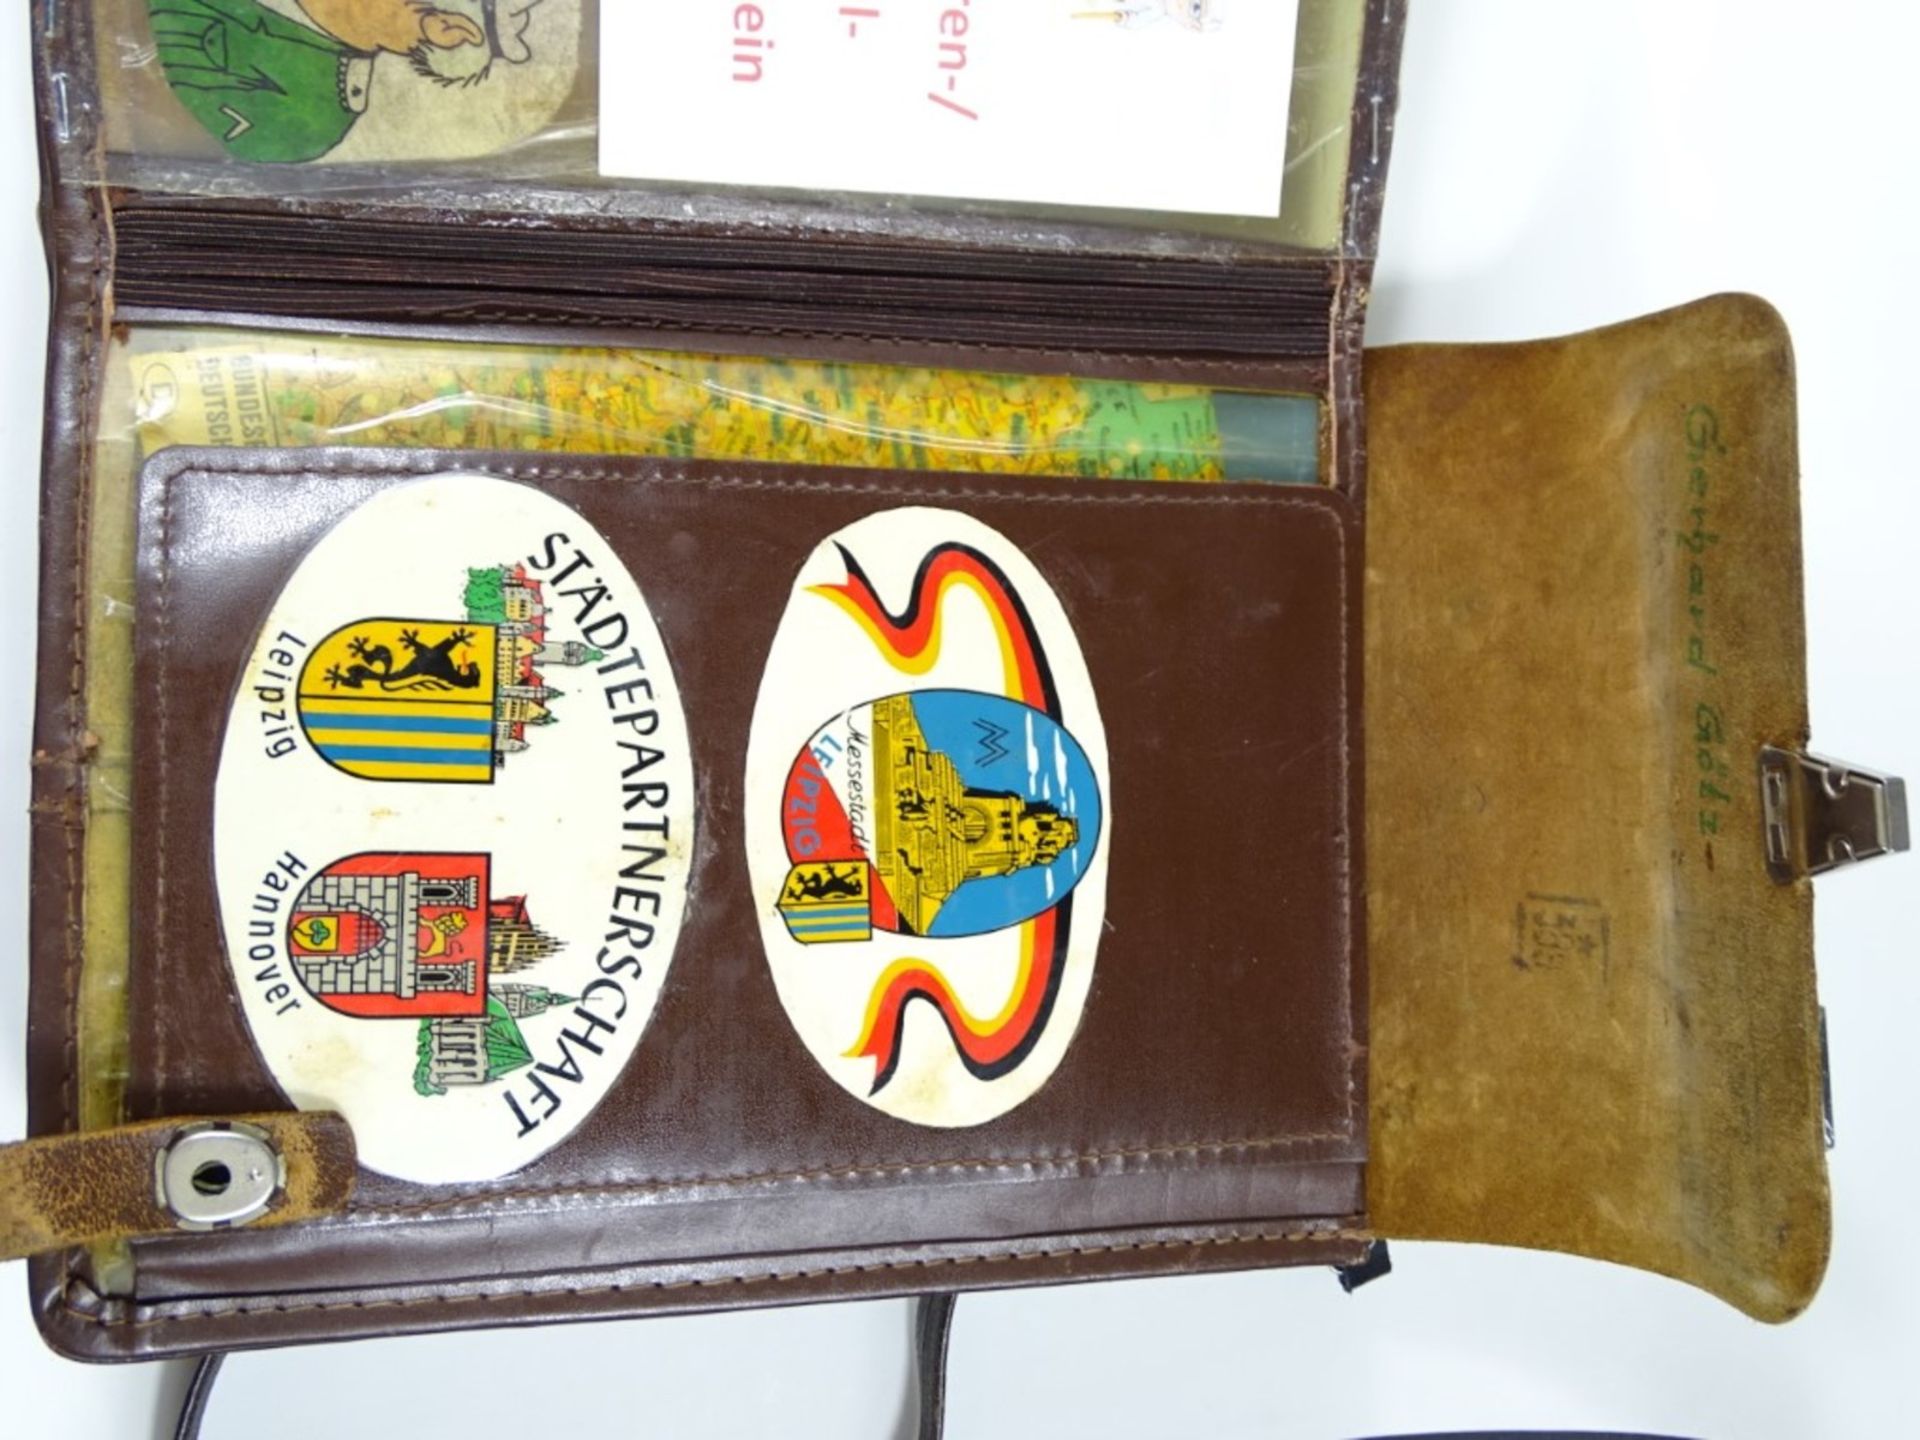 Kartentasche, Leder, mit diversen Pins und Stickern, 21 x 27,5 cm, Gebrauchsspuren vorhanden - Bild 3 aus 4